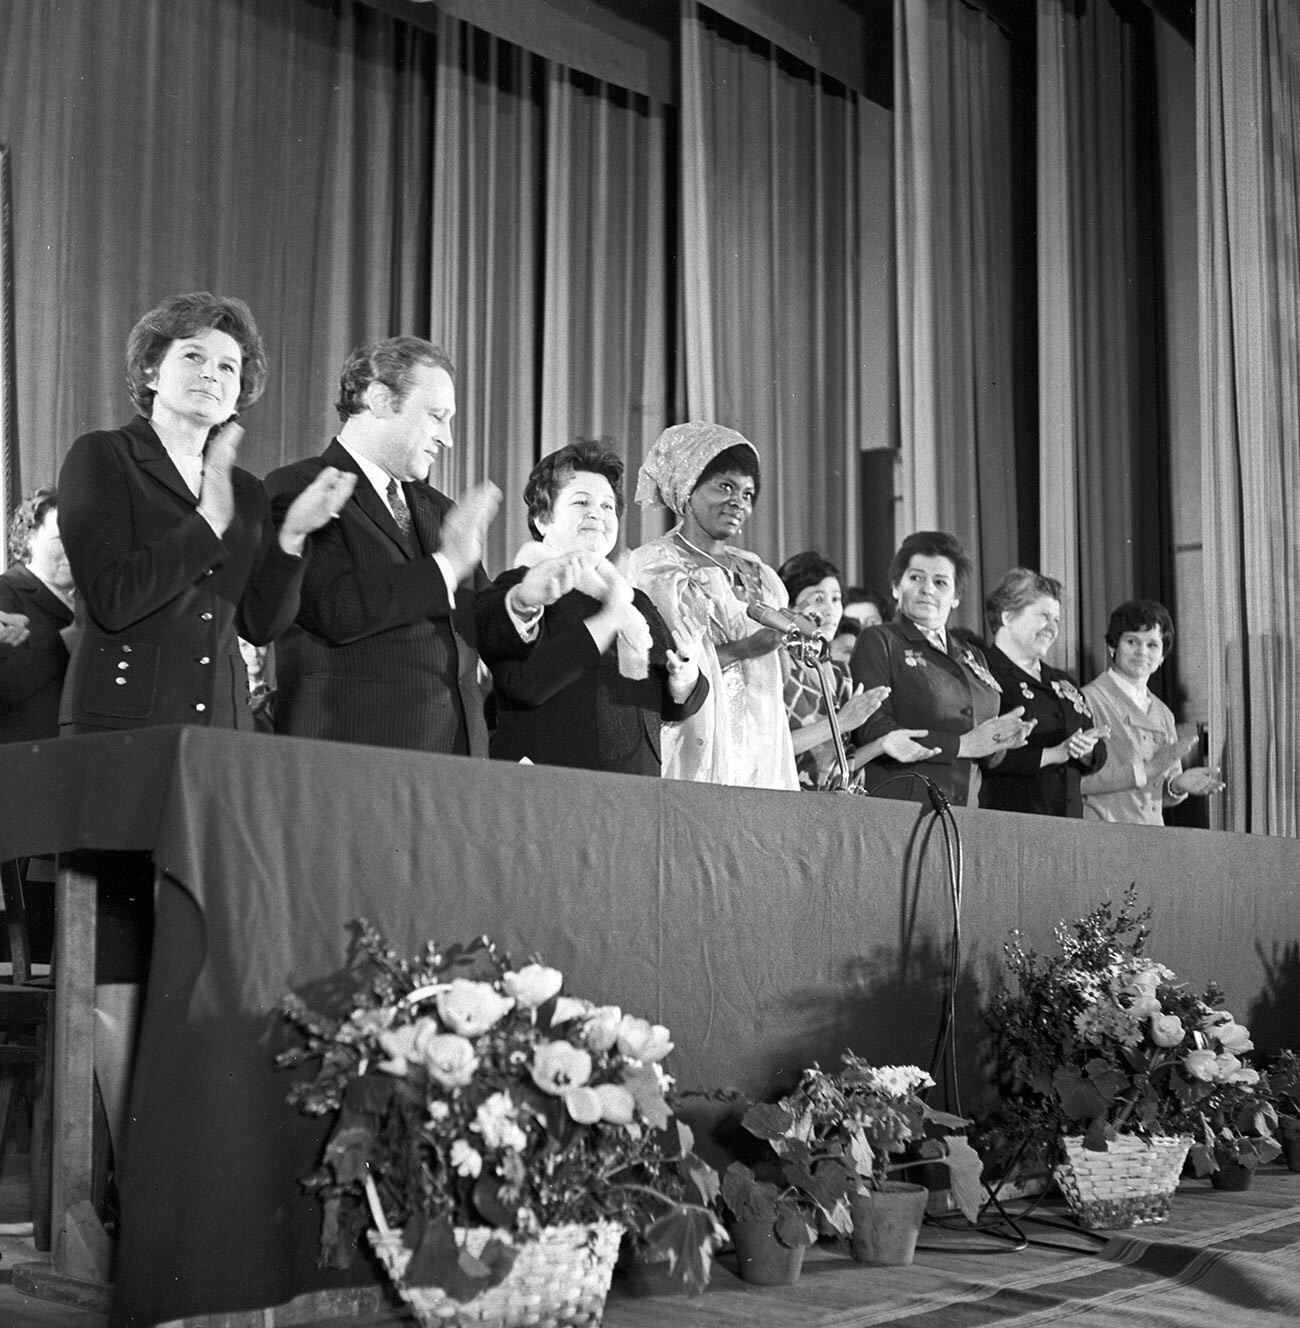 Praznovanje mednarodnega dneva žena 8. marca na Univerzi prijateljstva narodov Patrice Lumumba (danes Ruska univerza prijateljstva narodov). Predsednica odbora sovjetskih žensk, pilotka kozmonavtka ZSSR Valentina Tereškova (skrajno levo) na otvoritvi srečanja.